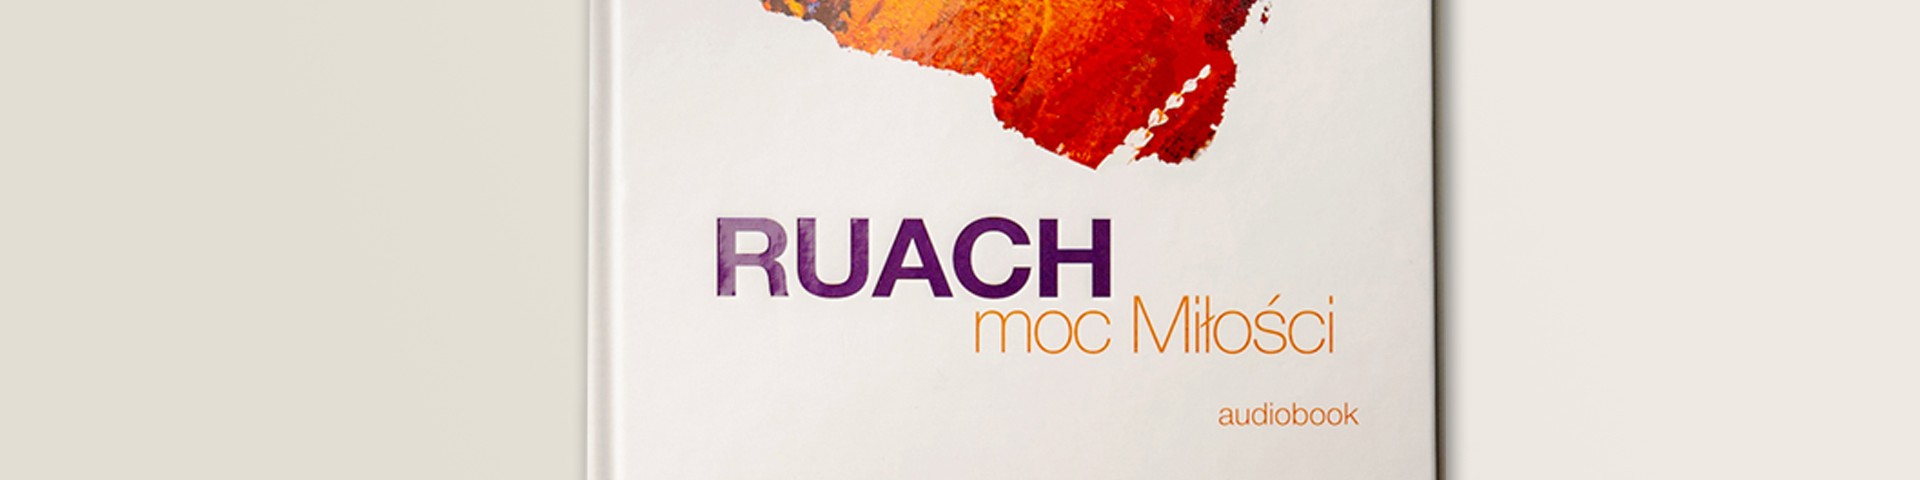 Nowa konferencja - Ruach - moc Miłości - ks. Michał Olszewski SCJ